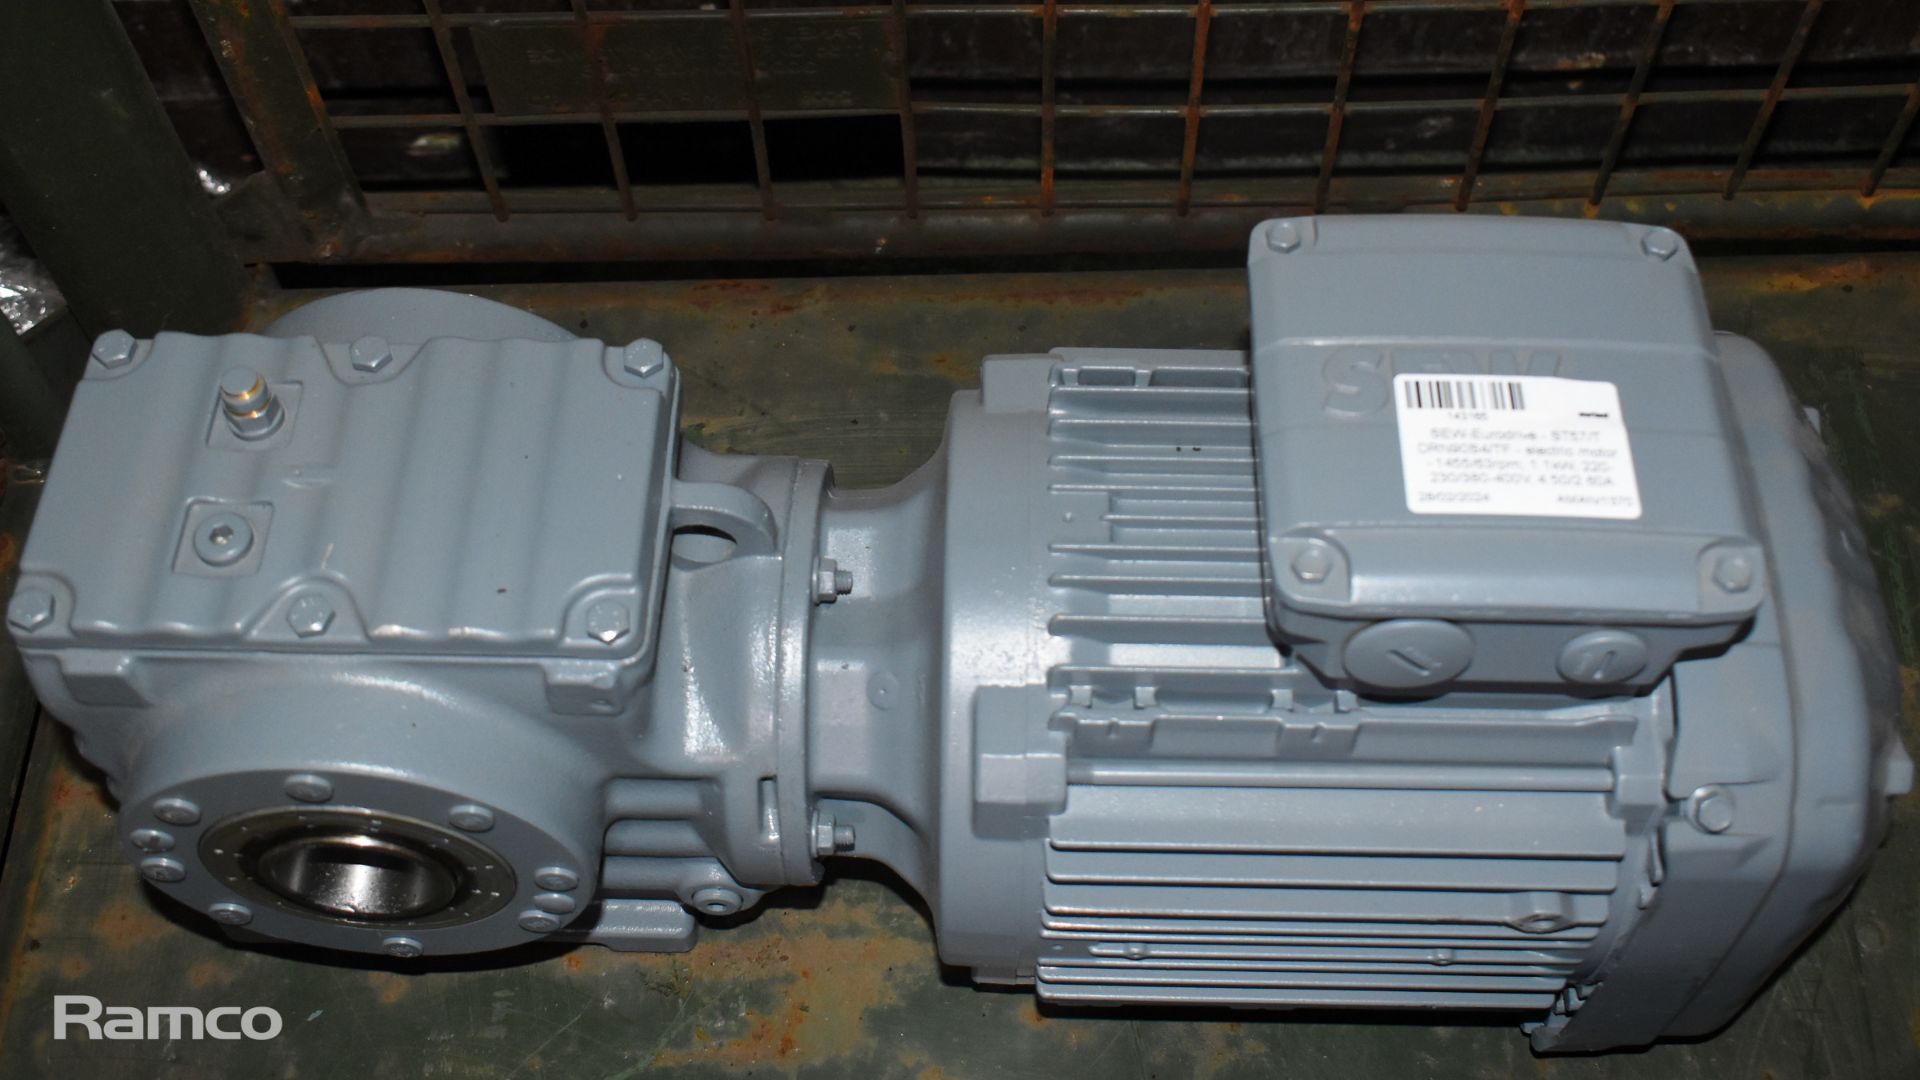 2x SEW-Eurodrive - RF27 DRE90ML4 electric motors - 1430/108rpm, 1.5kW, 220-242/380-420V, 6.00/3.45A - Image 9 of 9